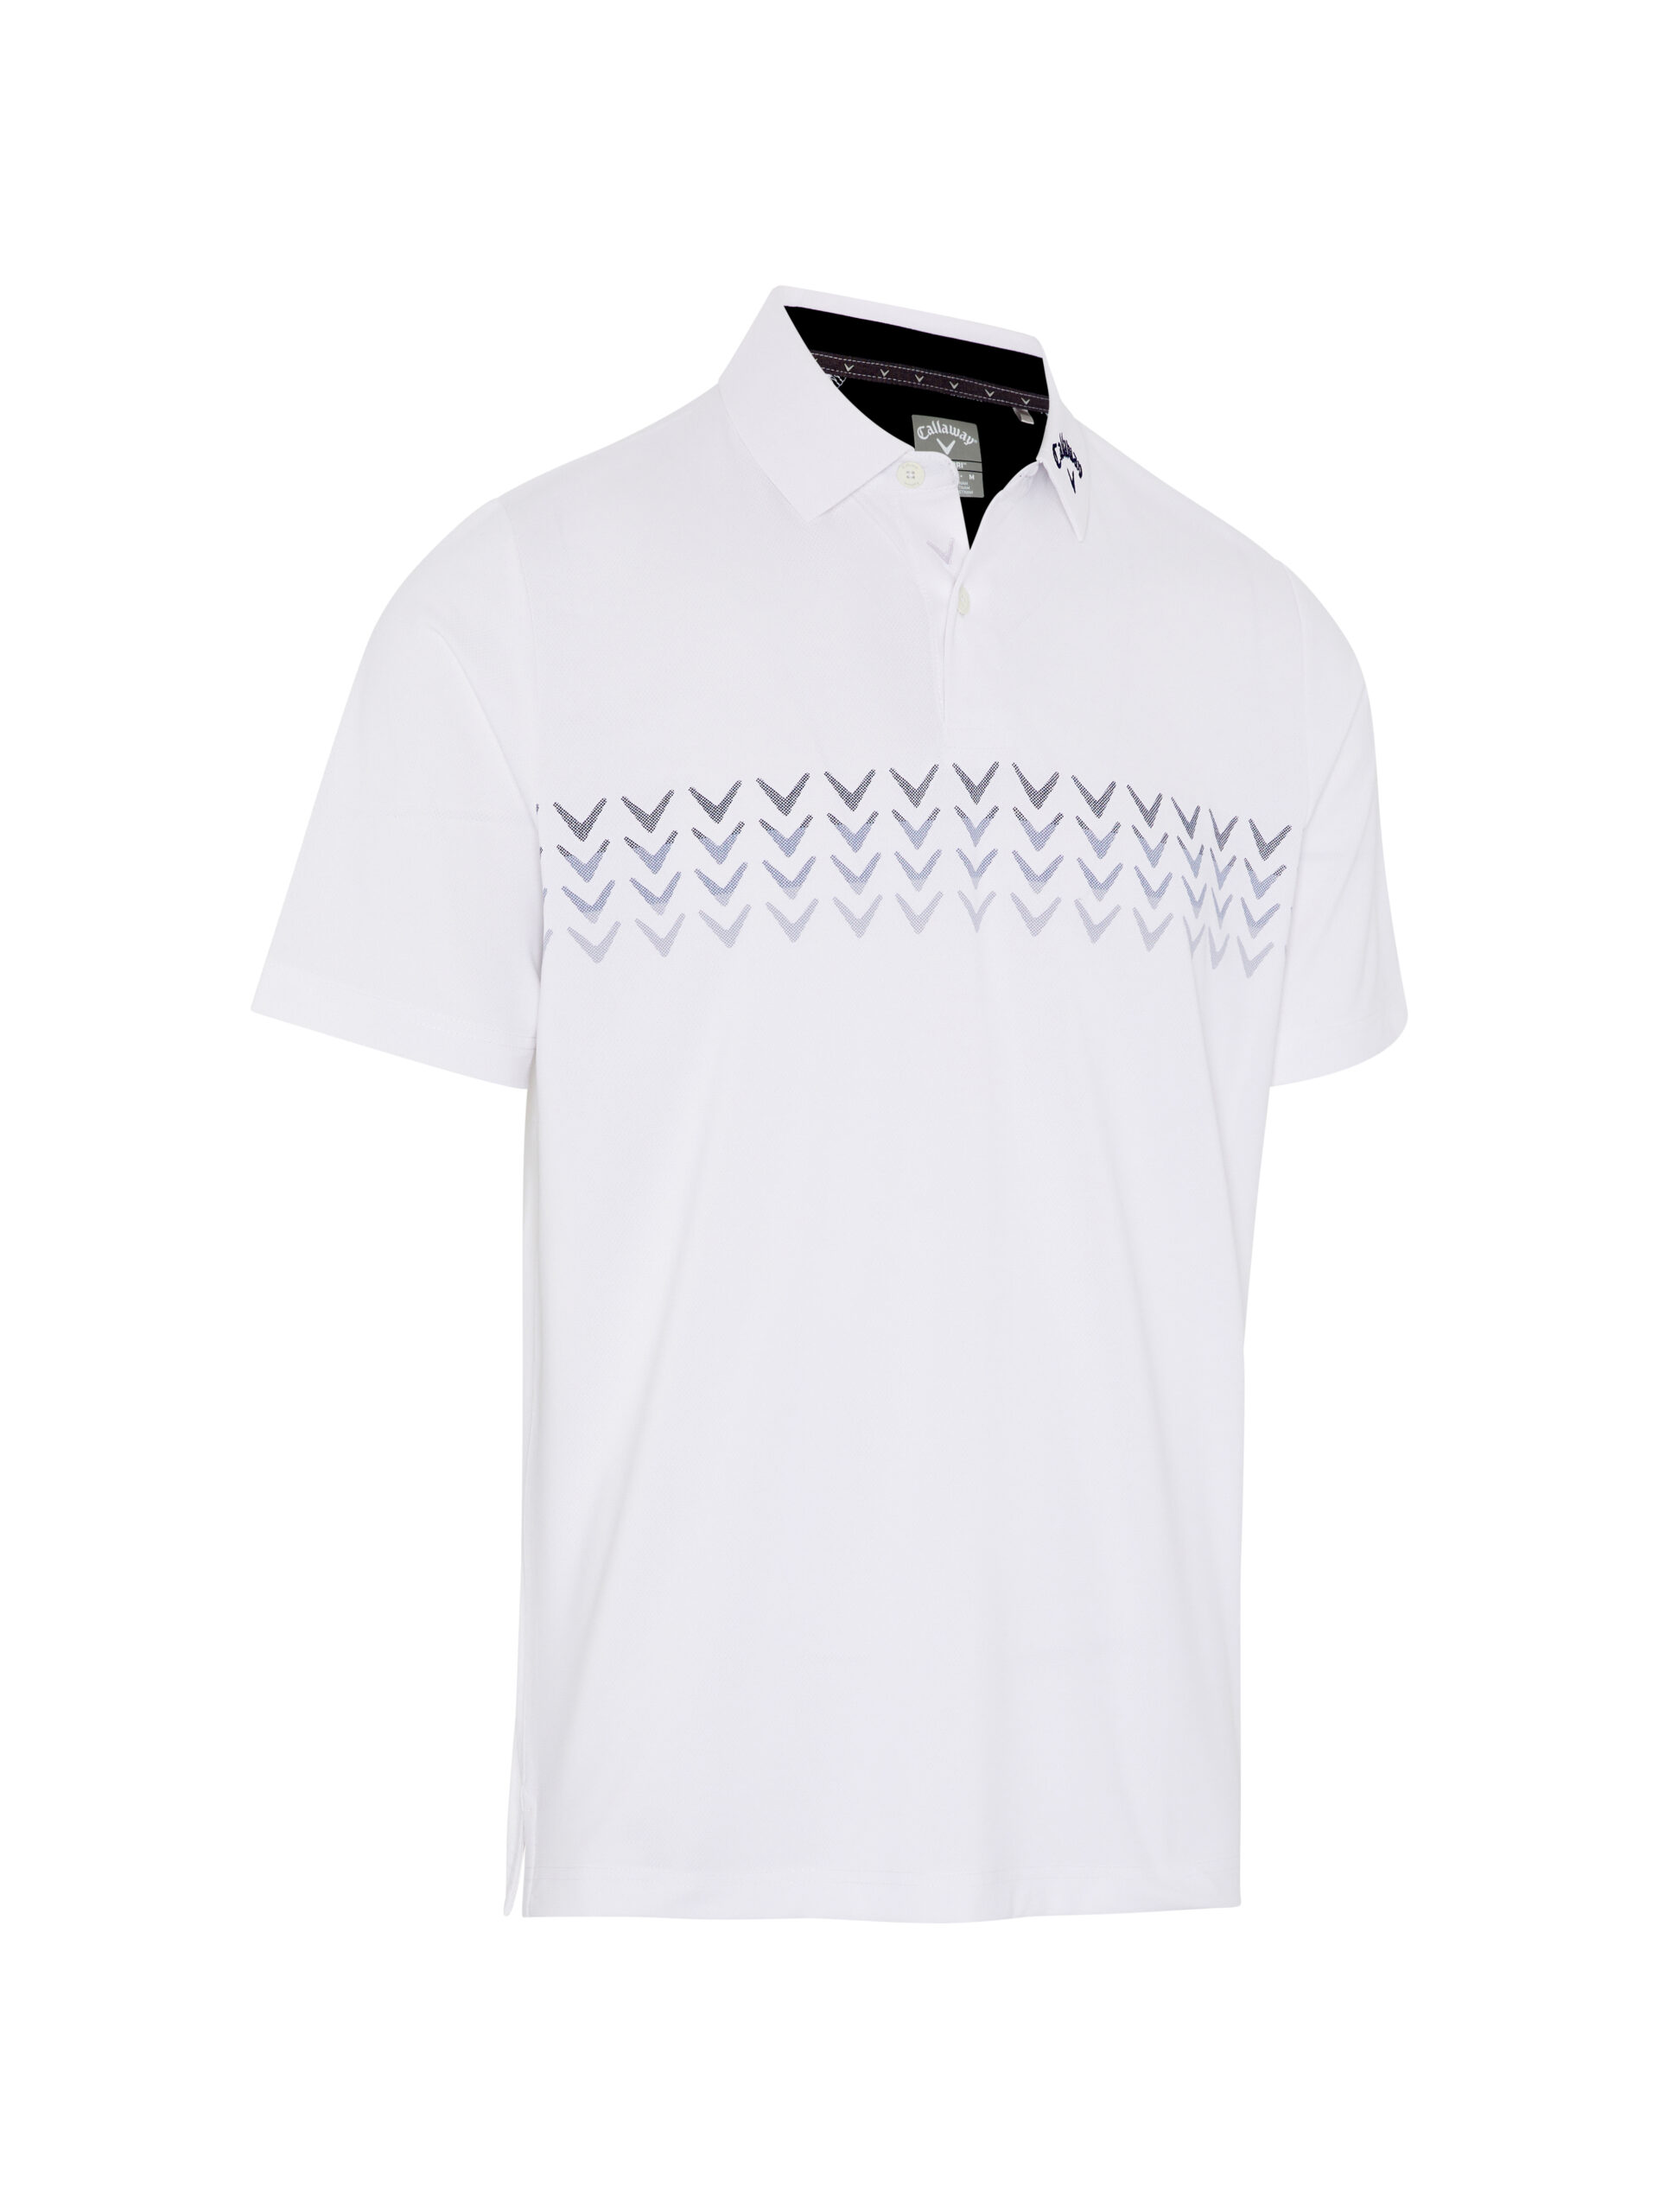 Callaway Chev Block pánské golfové triko, bílé, vel. M